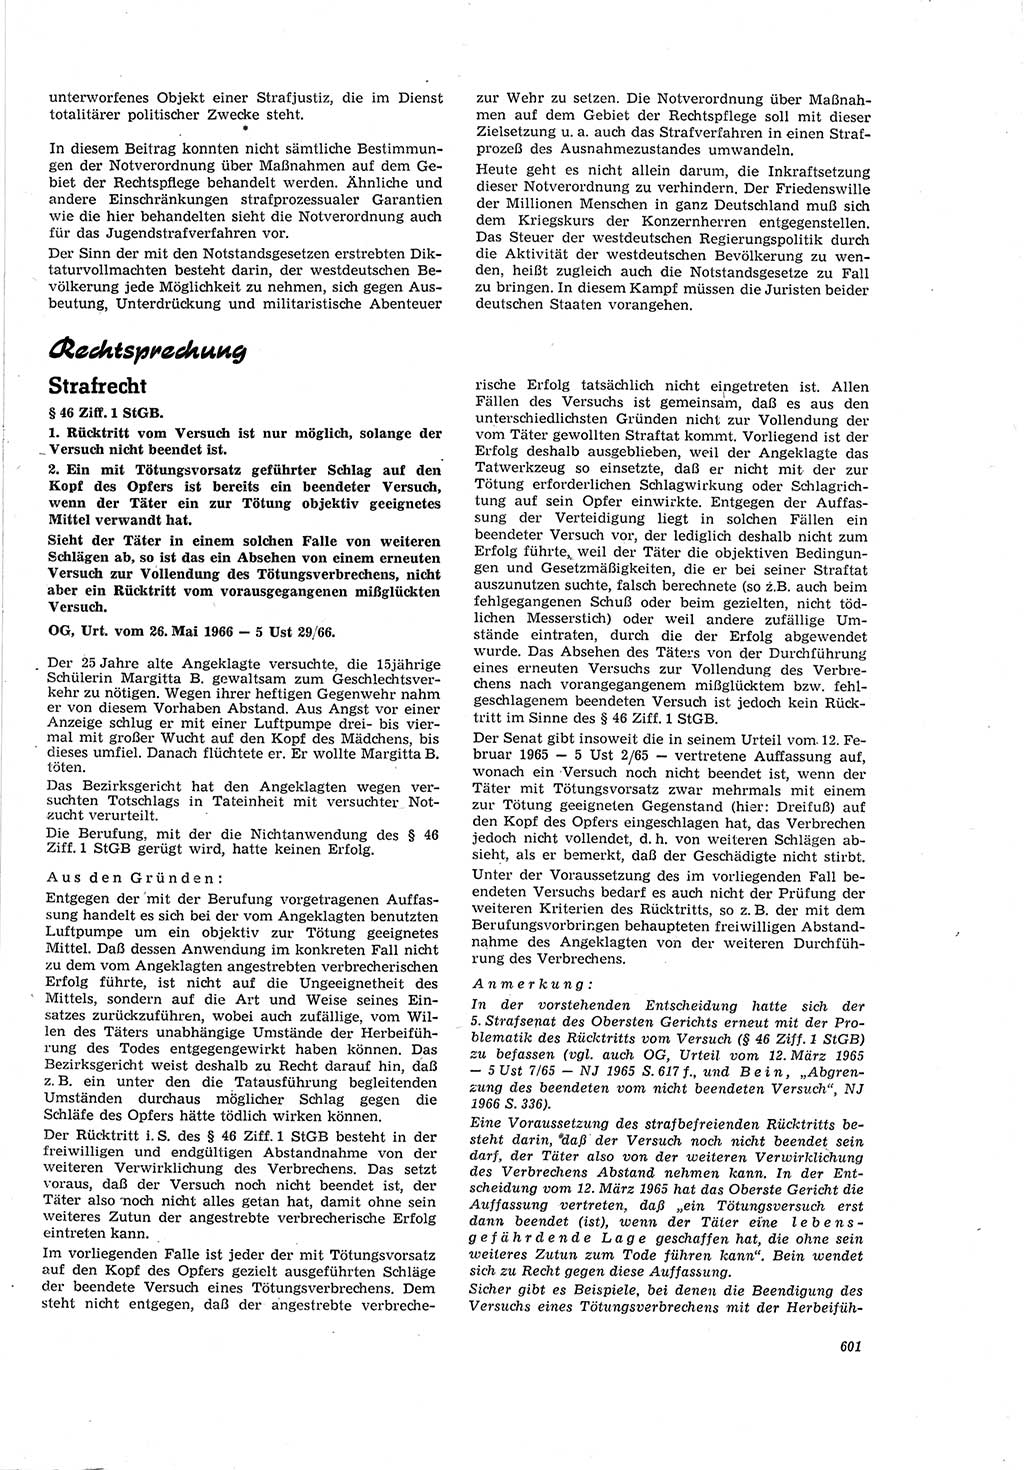 Neue Justiz (NJ), Zeitschrift für Recht und Rechtswissenschaft [Deutsche Demokratische Republik (DDR)], 20. Jahrgang 1966, Seite 601 (NJ DDR 1966, S. 601)